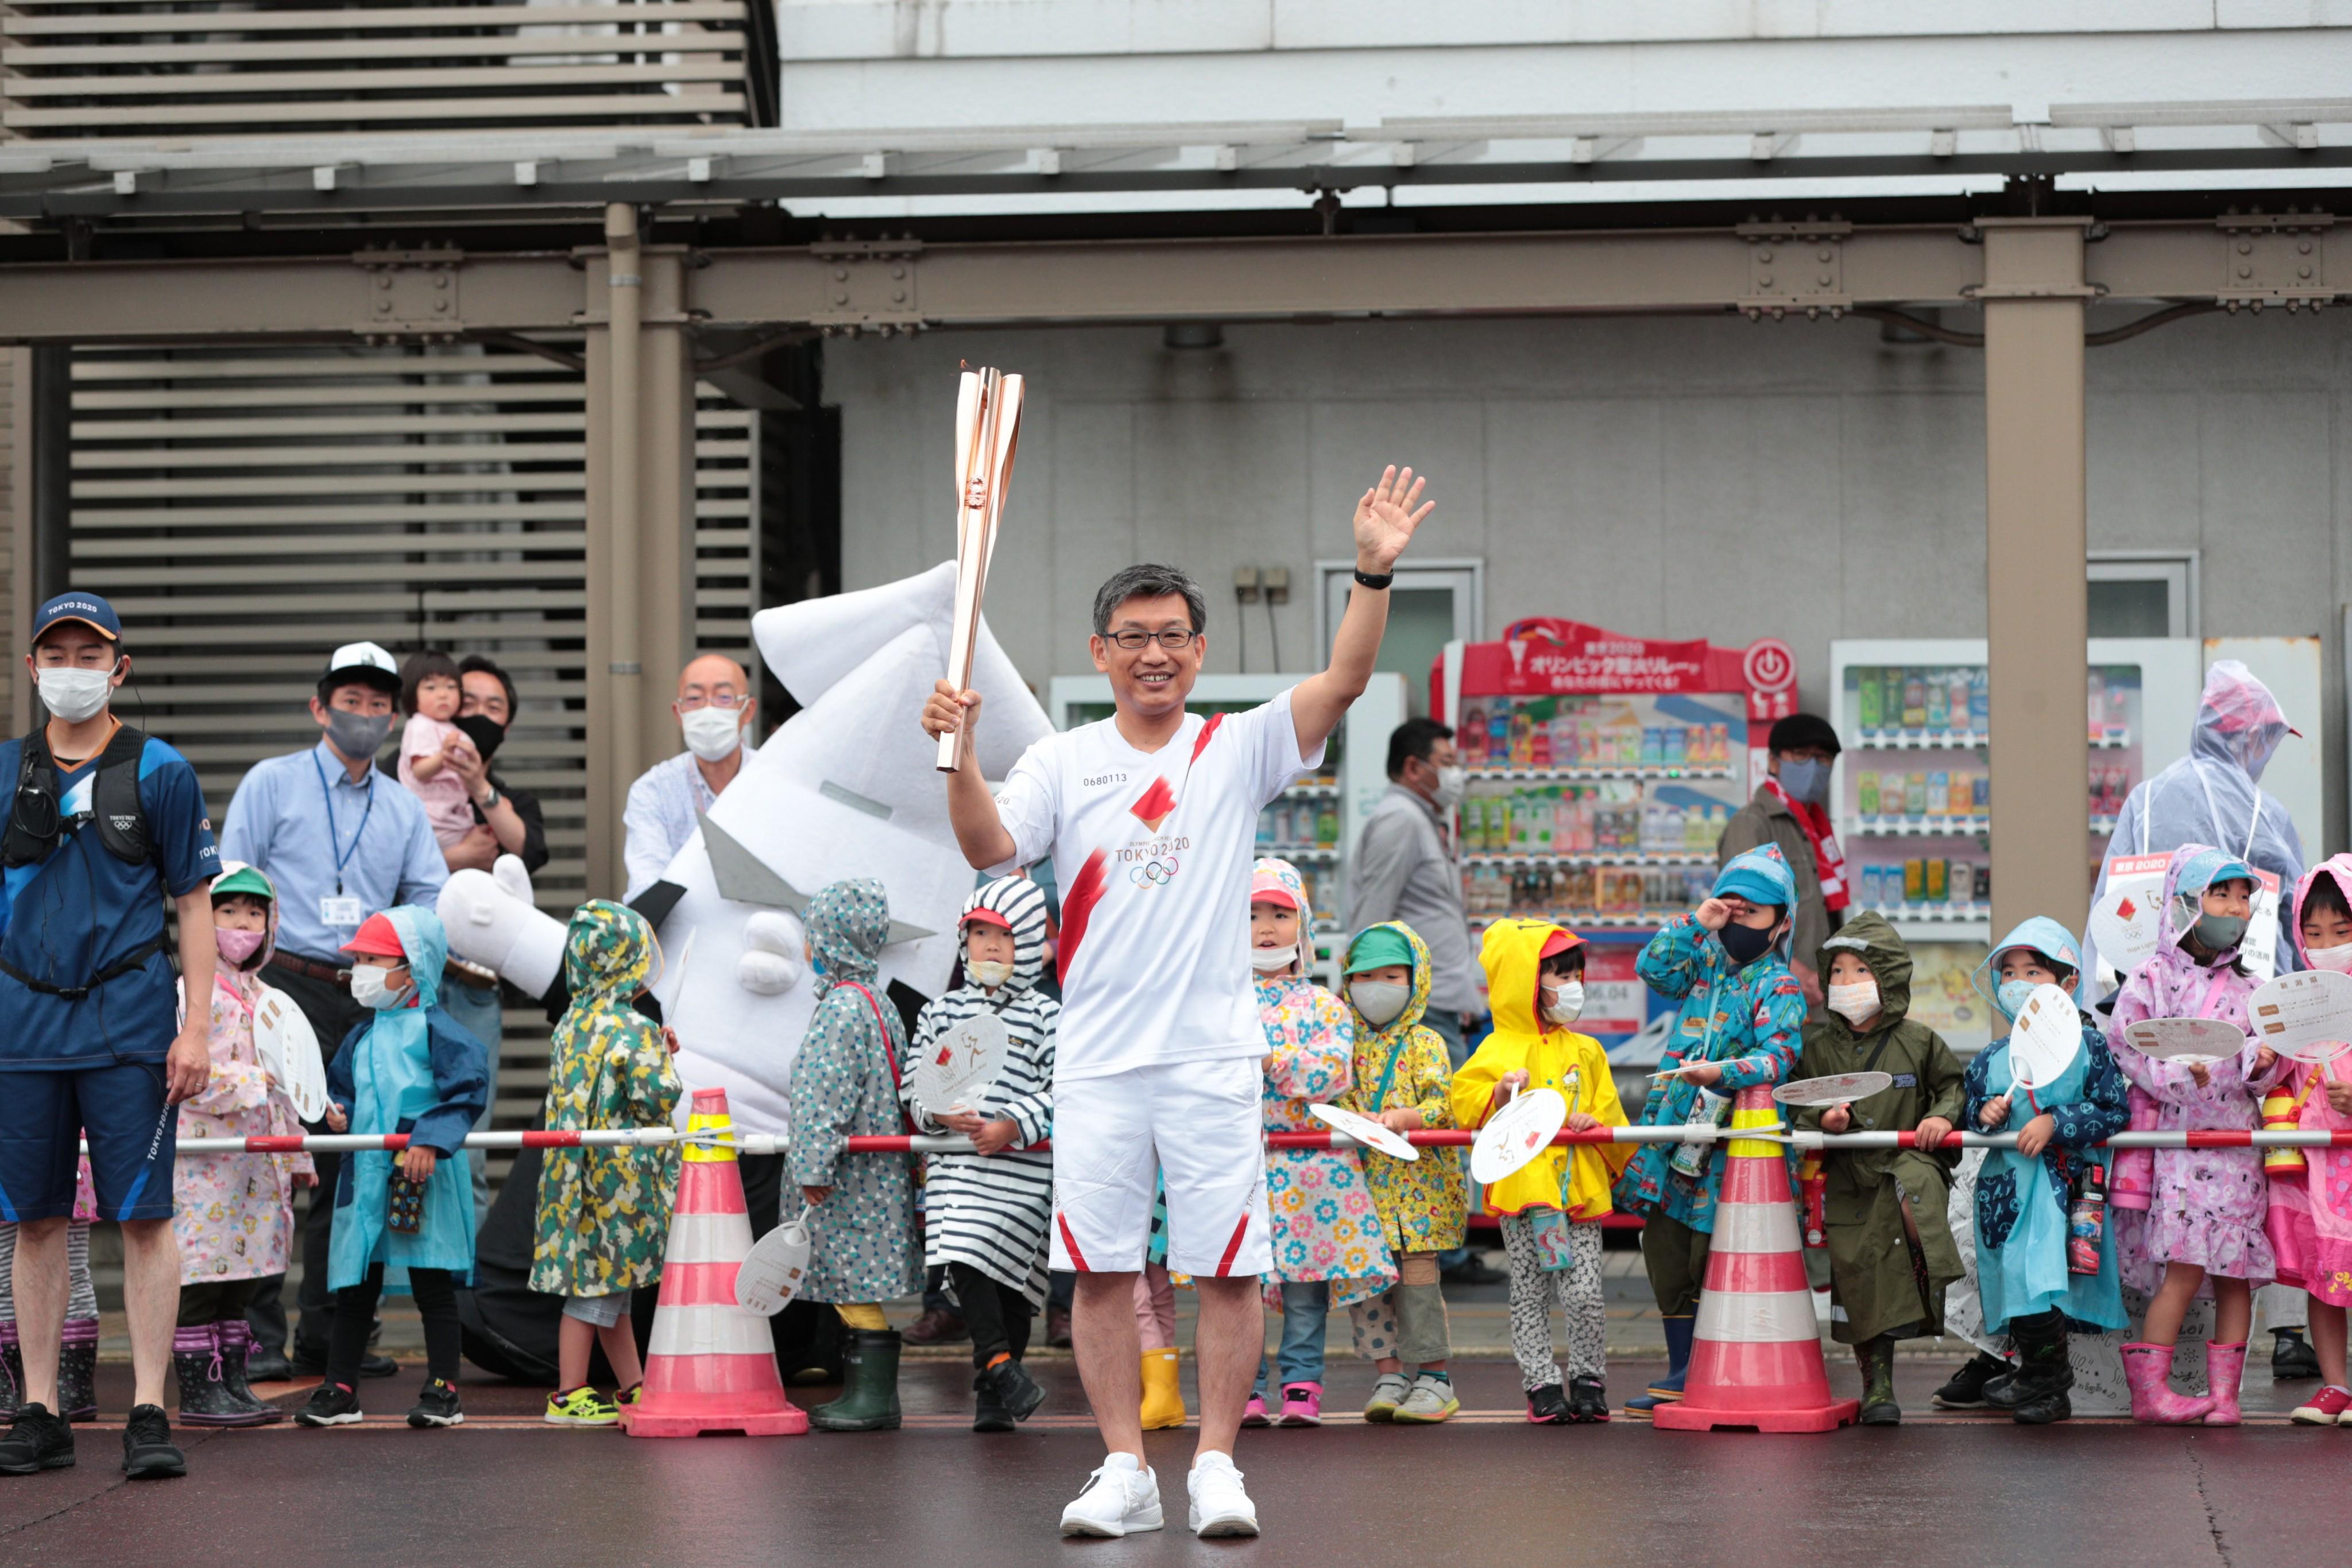 Los Juegos Olímpicos se realizarán en Tokio del 23 de julio al 8 de agosto. (Foto Prensa Libre).